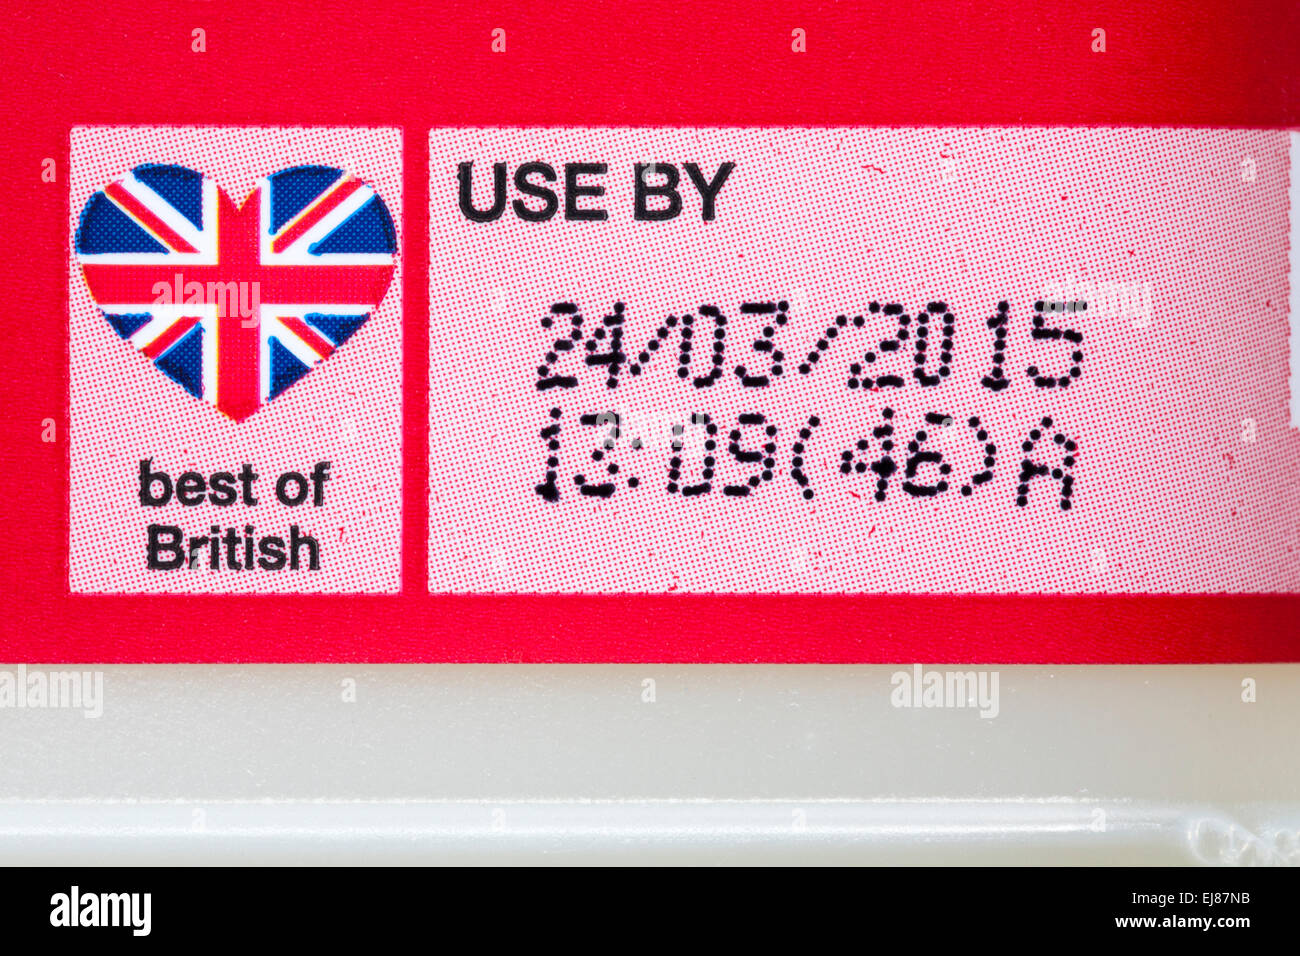 Best of British y fecha de uso - Etiqueta de 1 pinta de granja británica Marks & Spencer aseguró la leche desnatada Foto de stock